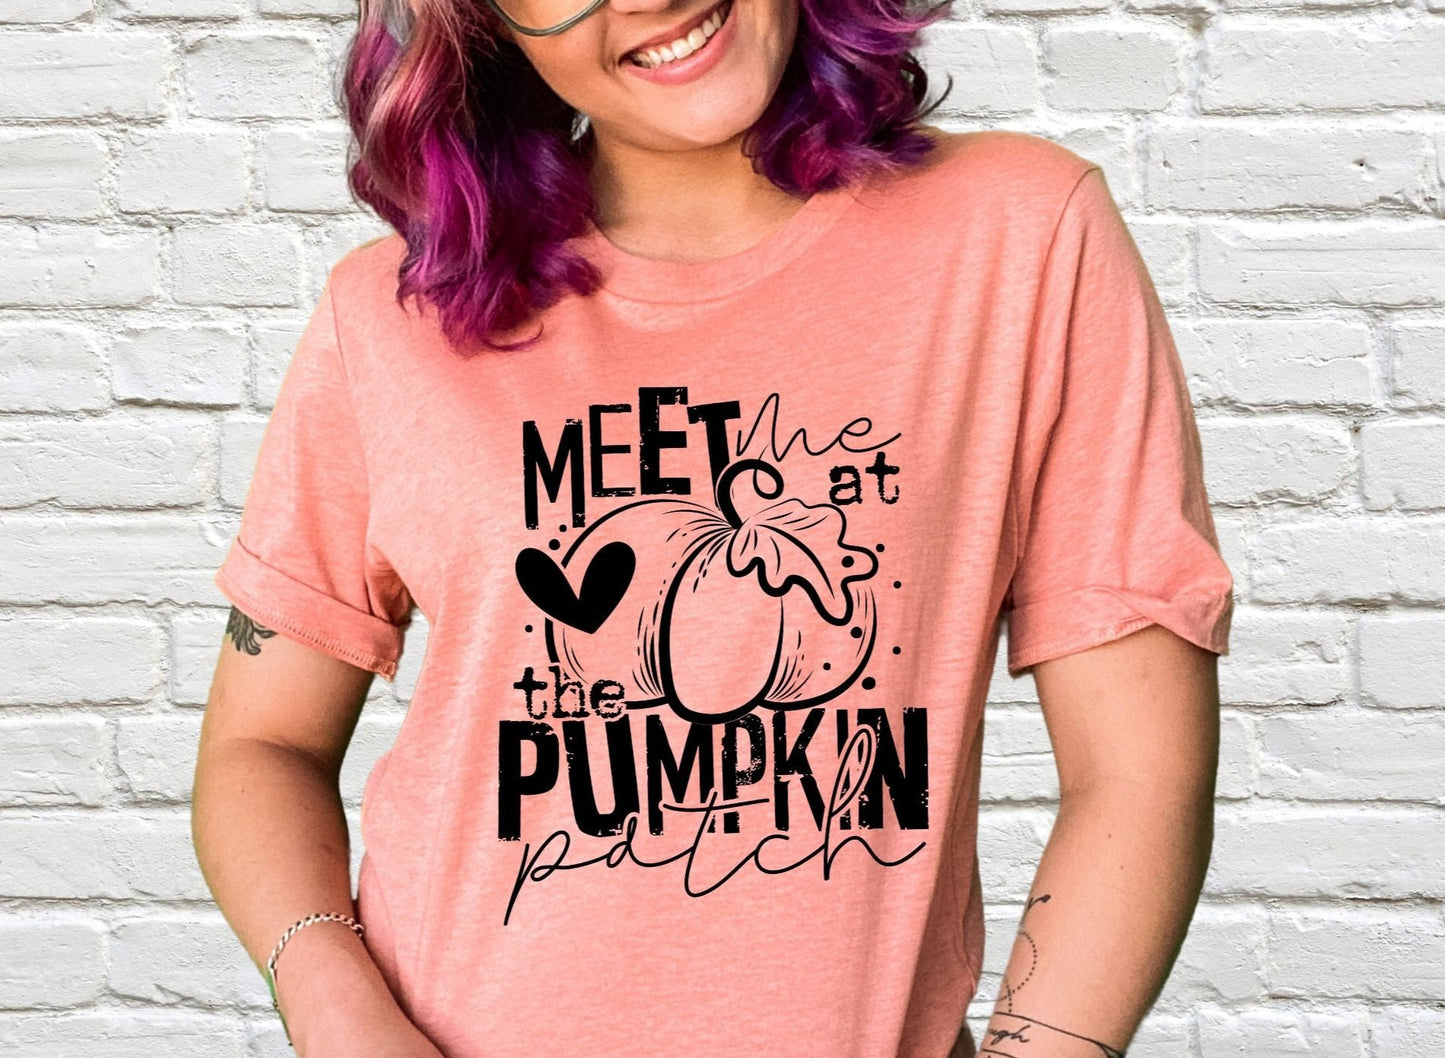 Meet me at the Pumpkin patch!